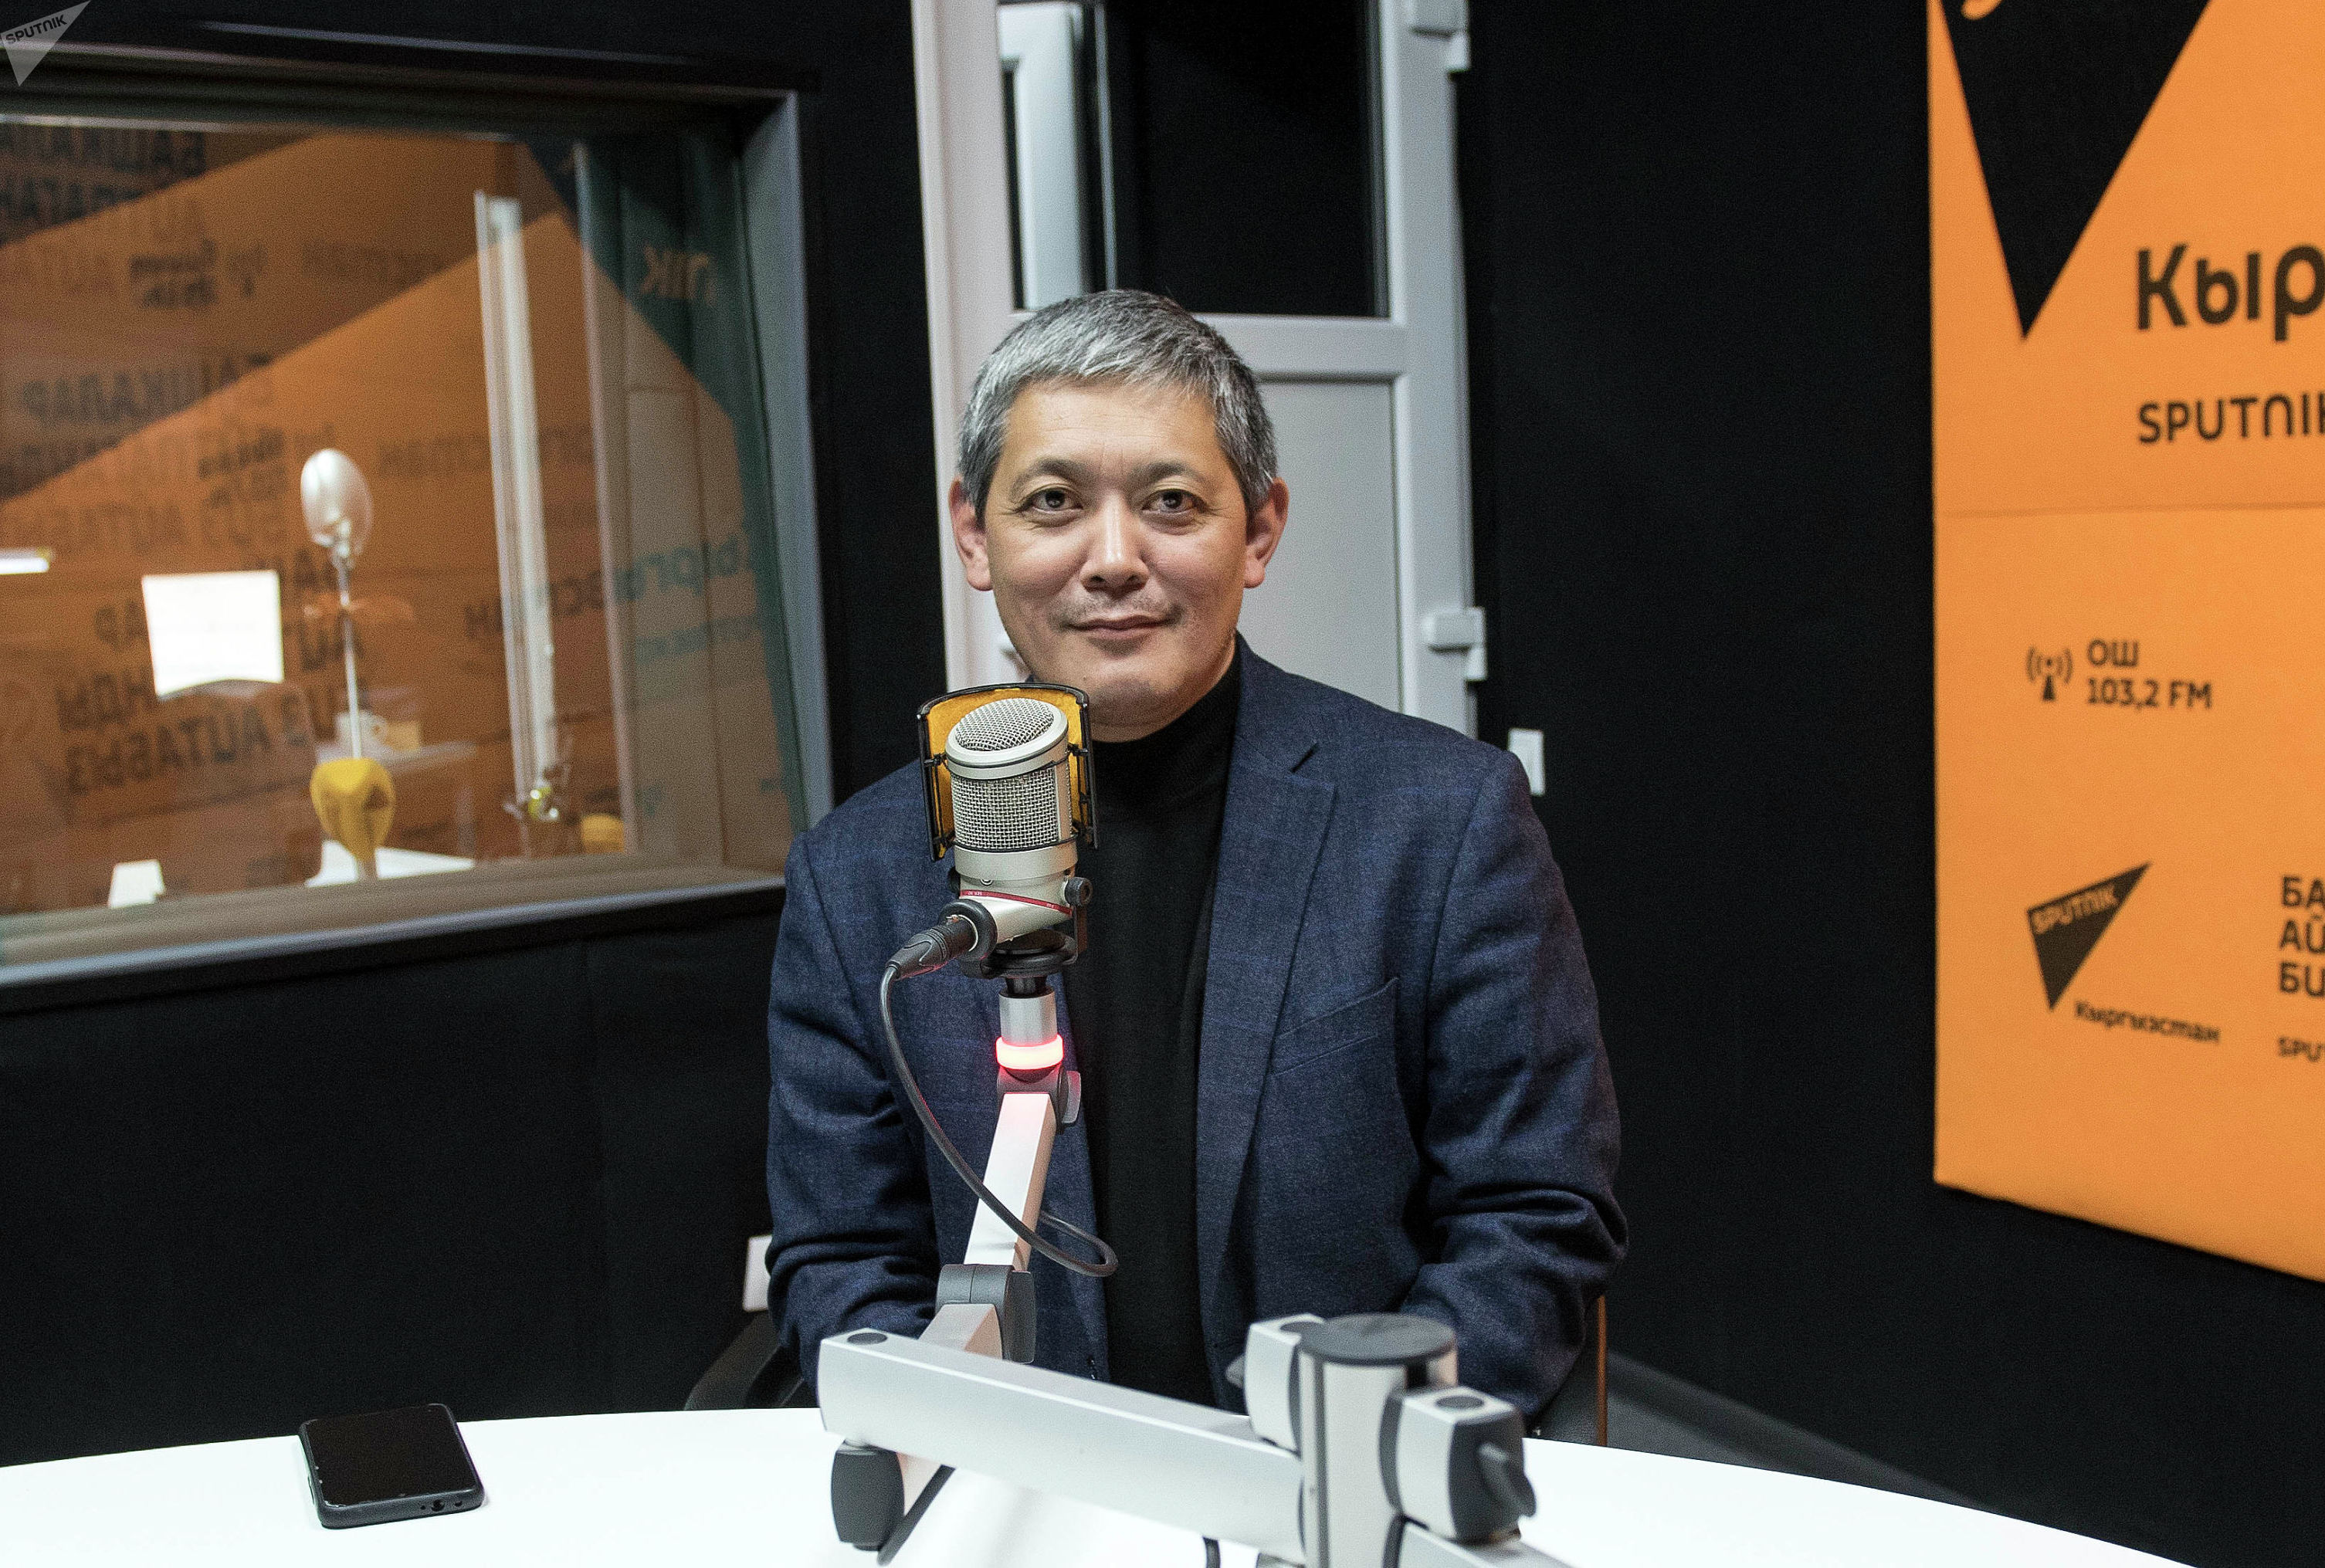 Торага организации Кыргызского общества слепых и глухих Бахтияр Мамбетказиев во время беседы на радио